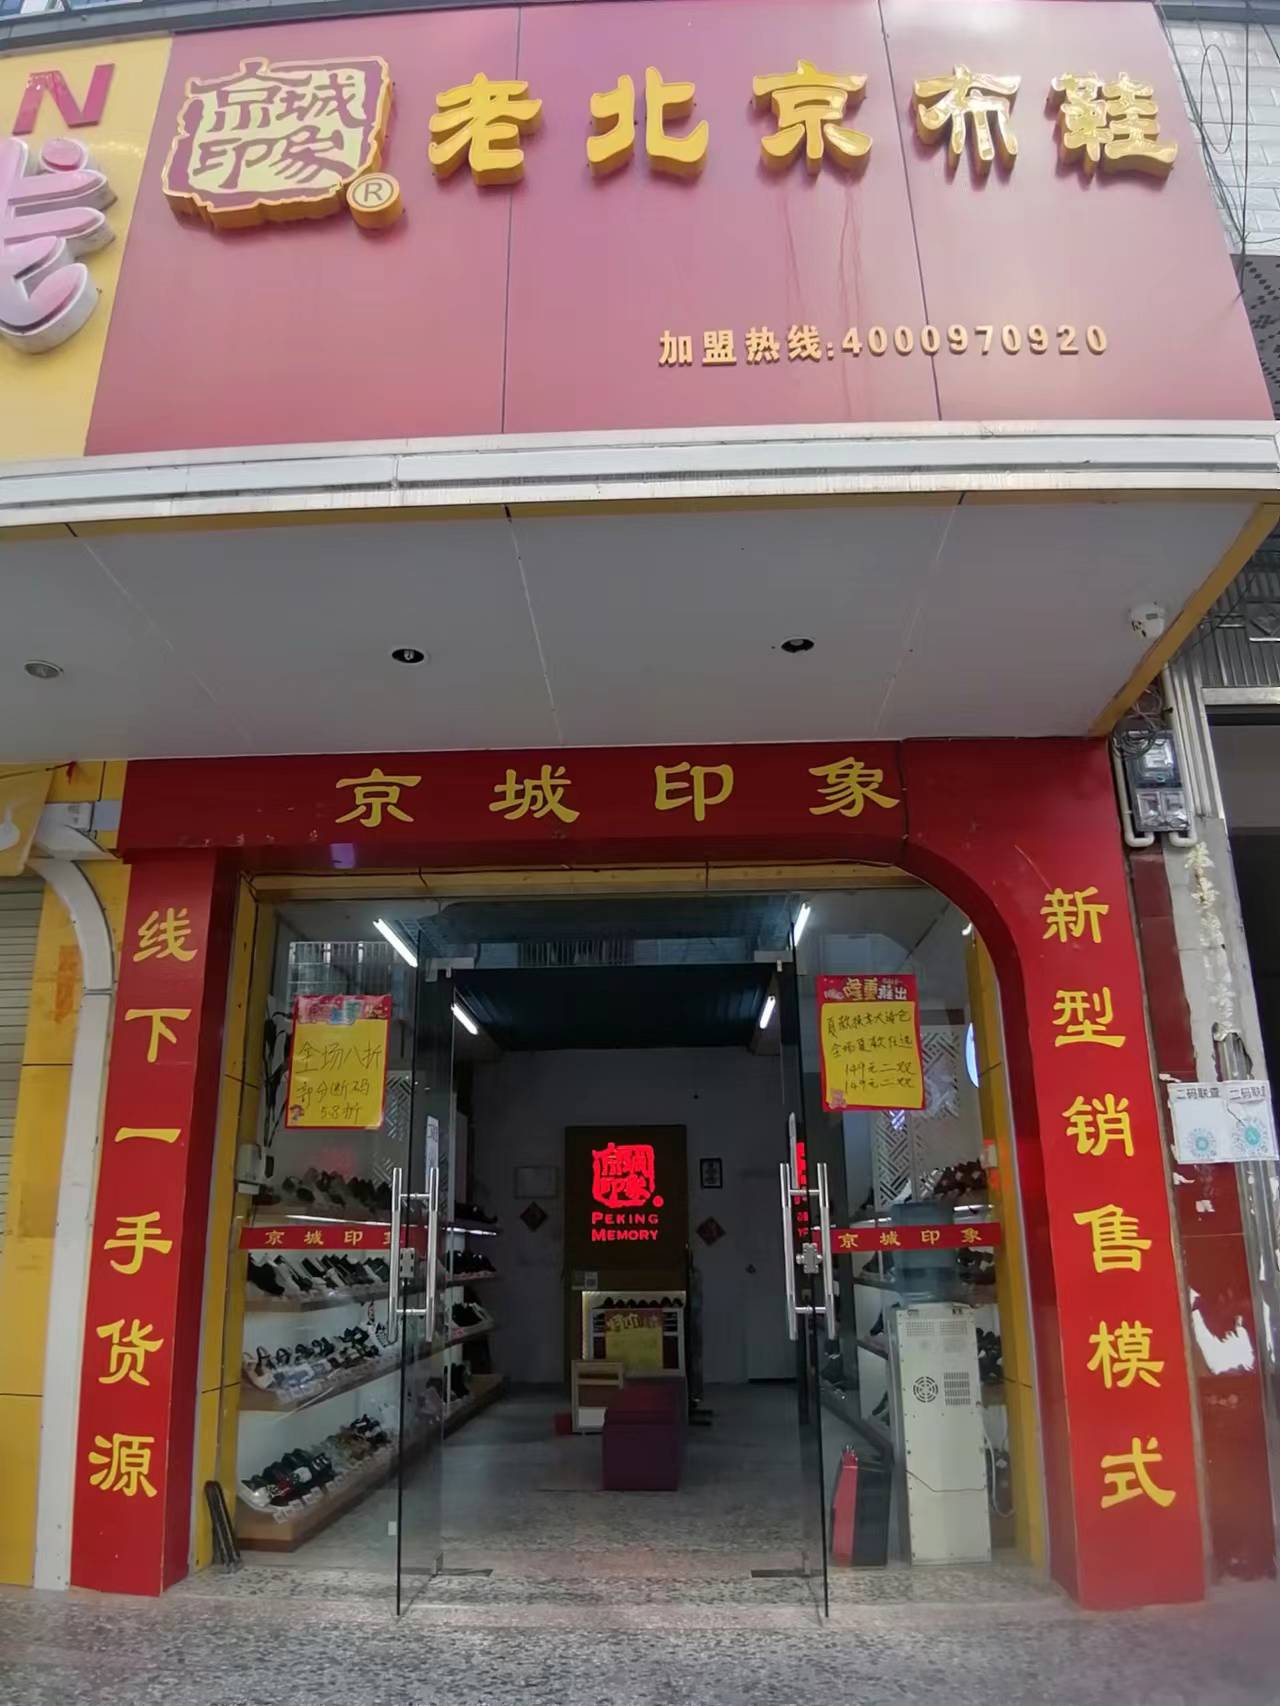 贺：京城印象老北京布鞋加盟店广西玉林罗老板盛大开业！